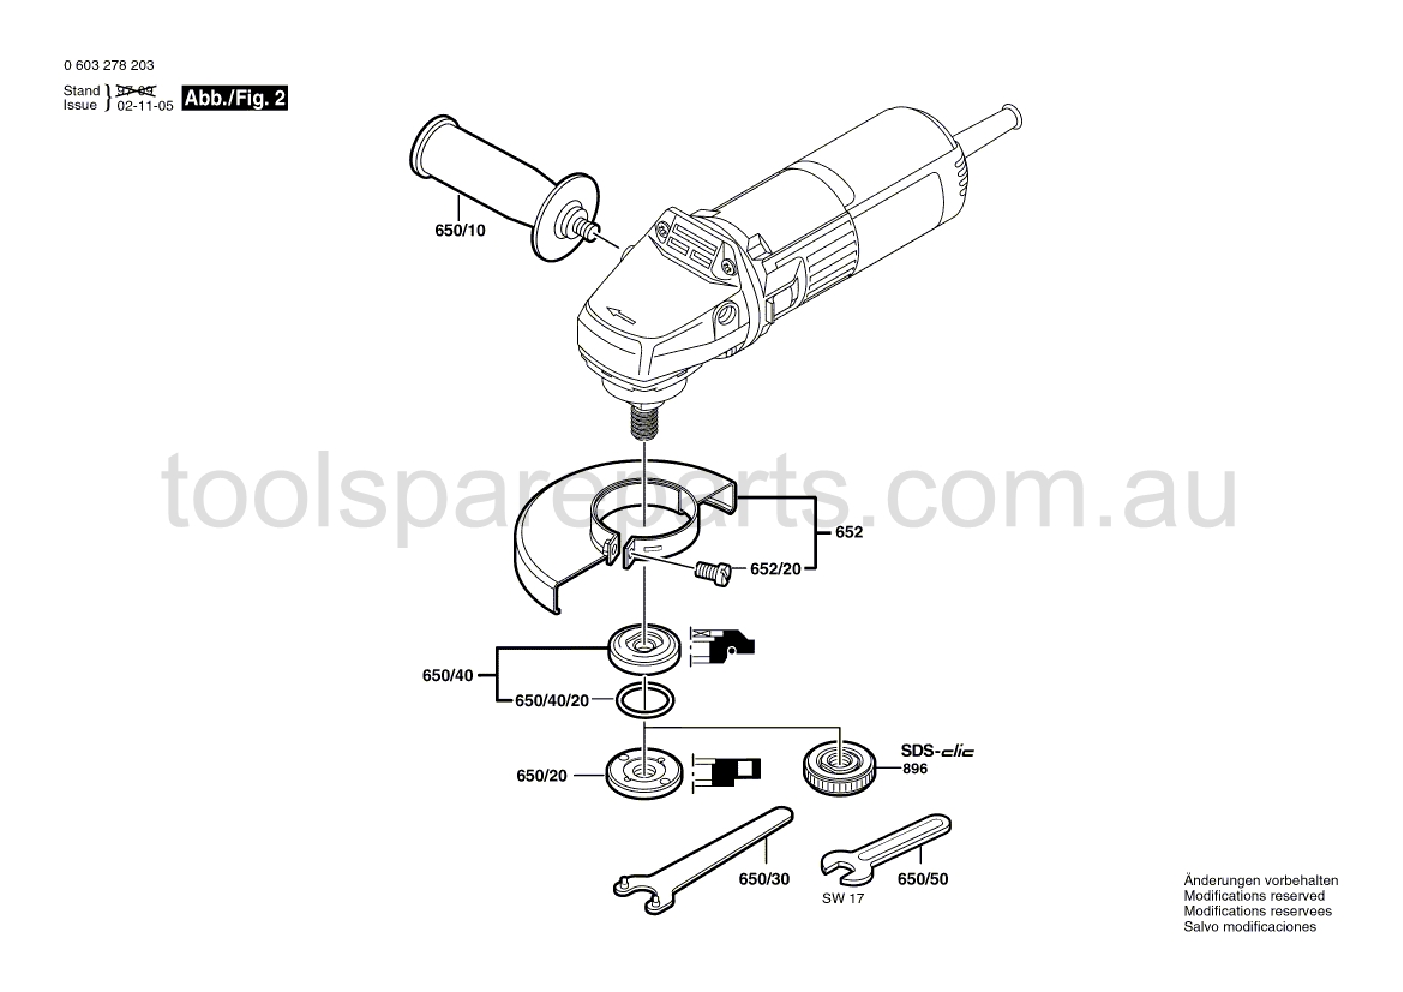 Bosch PWS 6-115 0603278237  Diagram 2